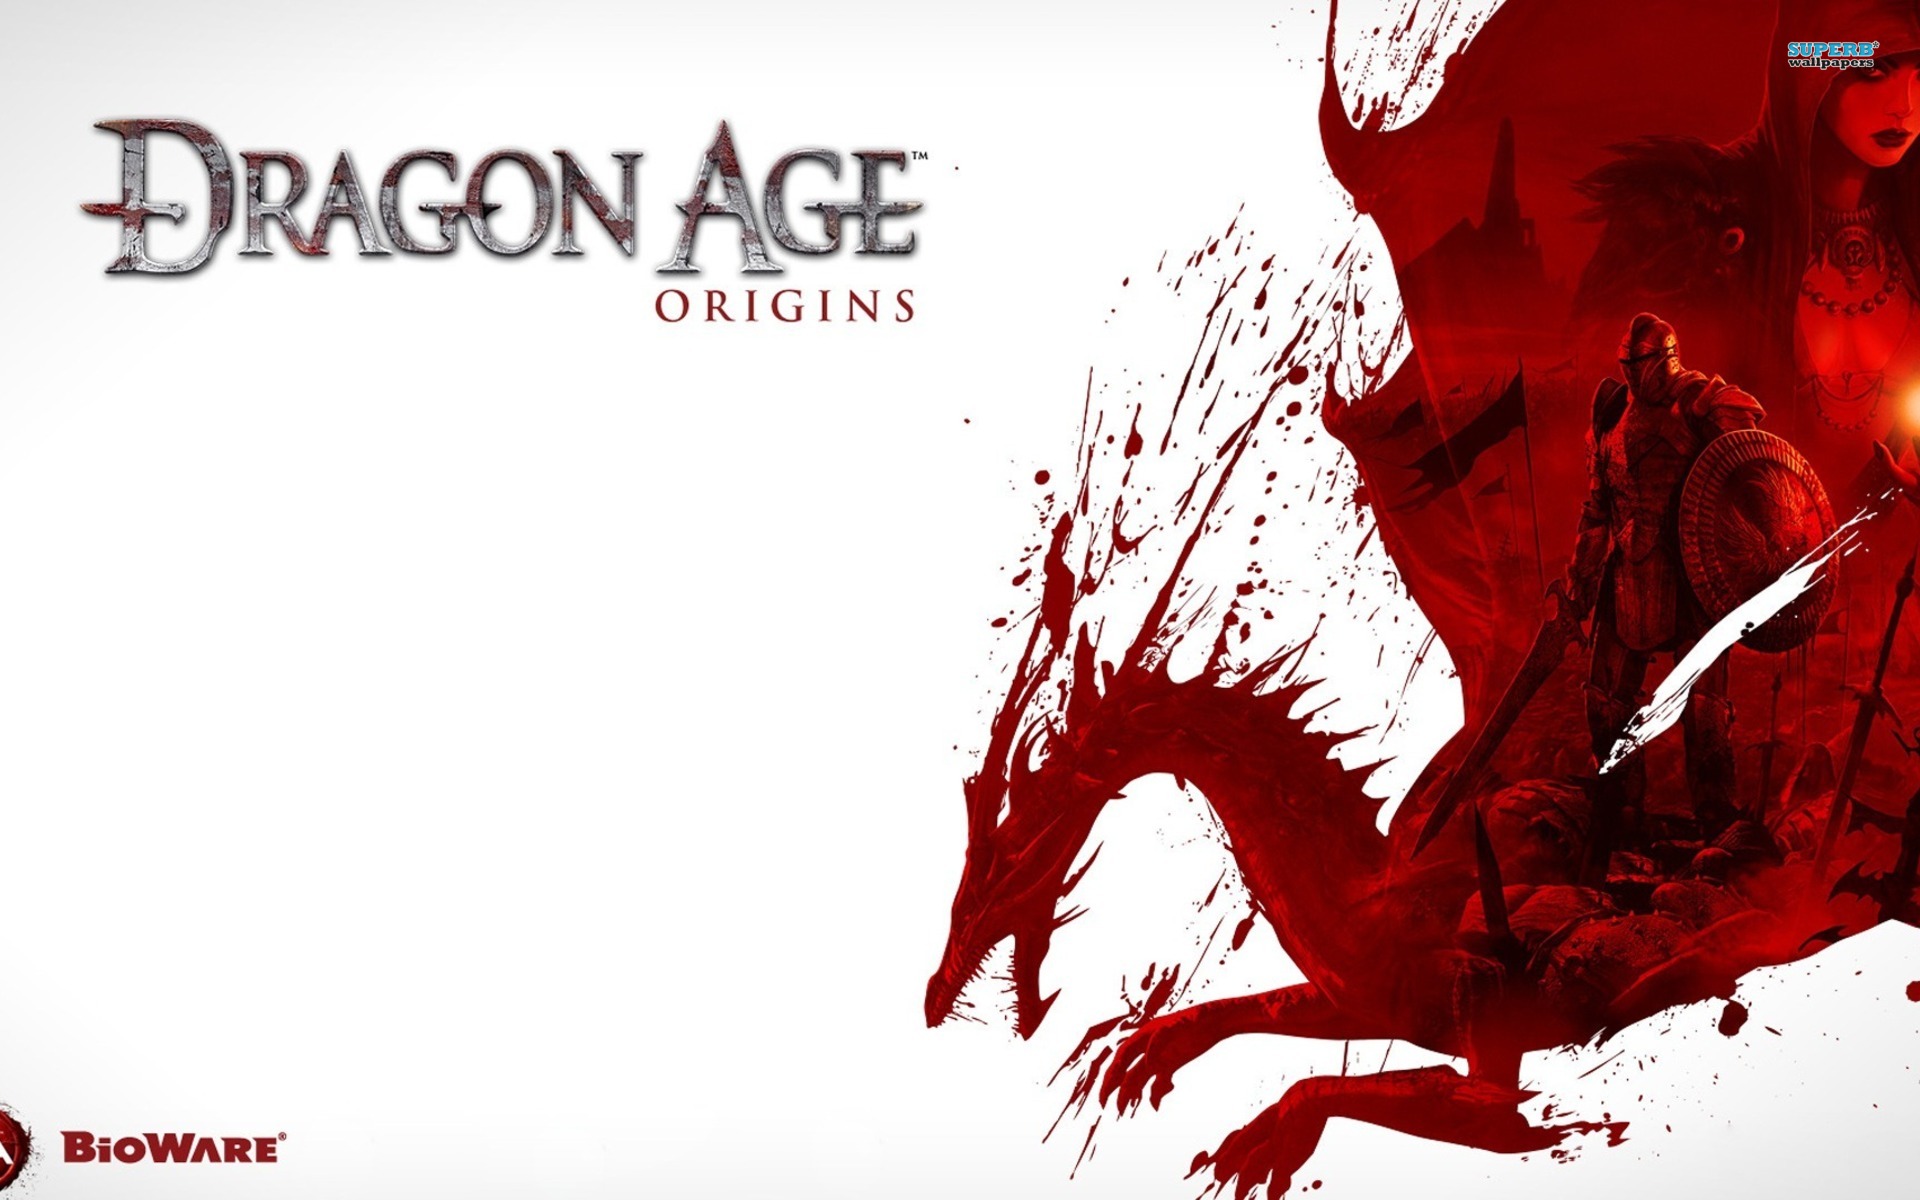 dragon age origins add item mod